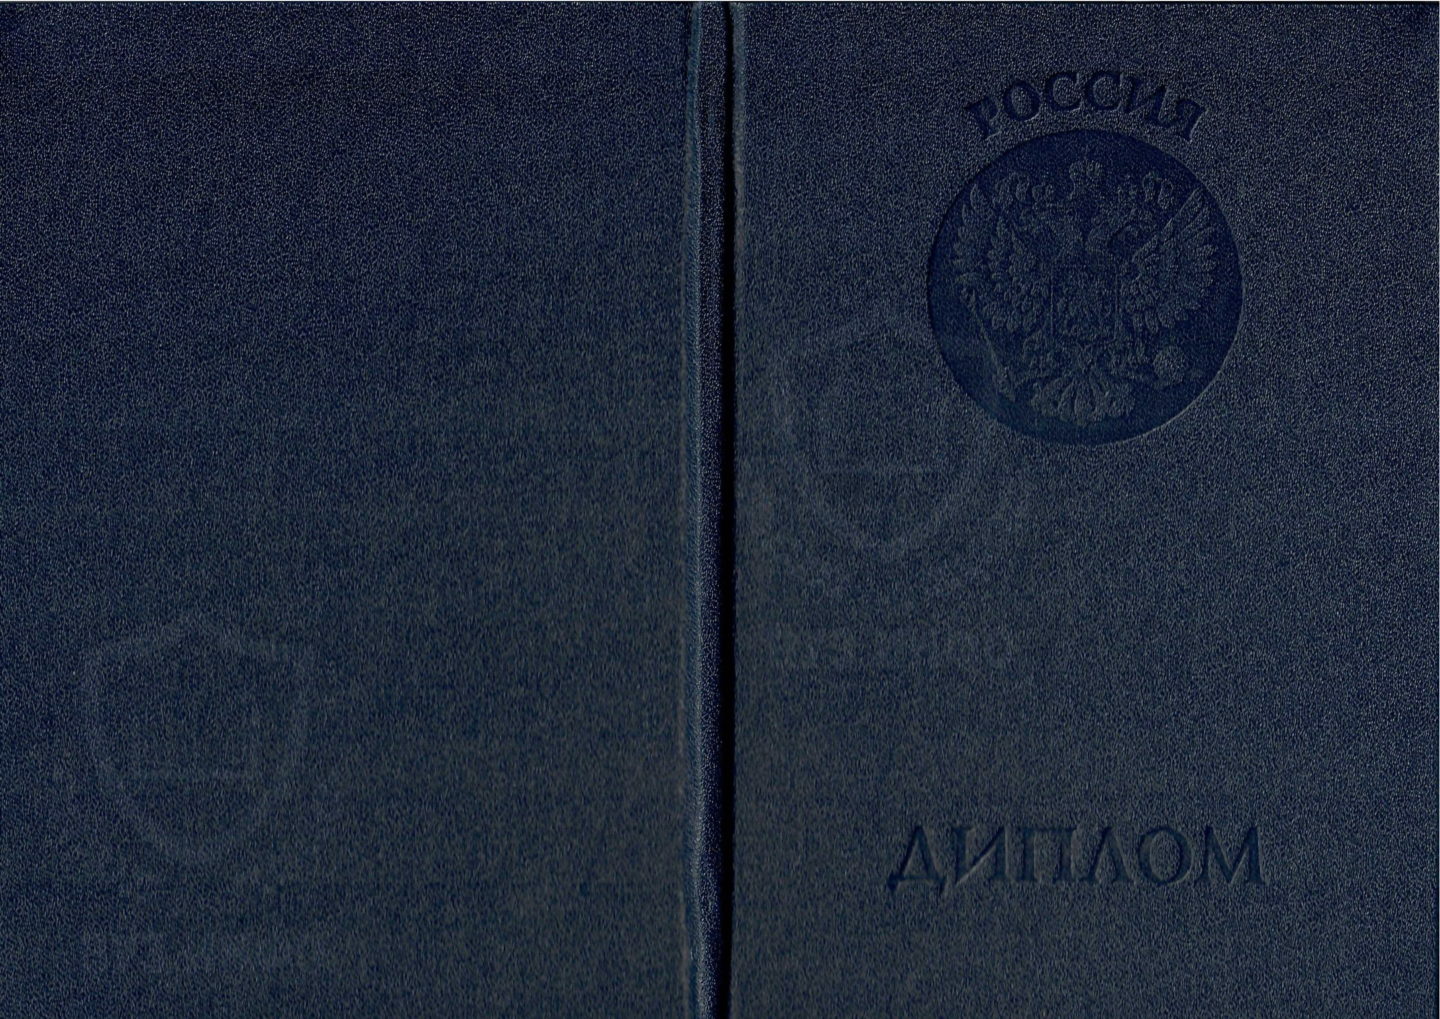 Обложка диплом ВУЗа 2002-2008 годов